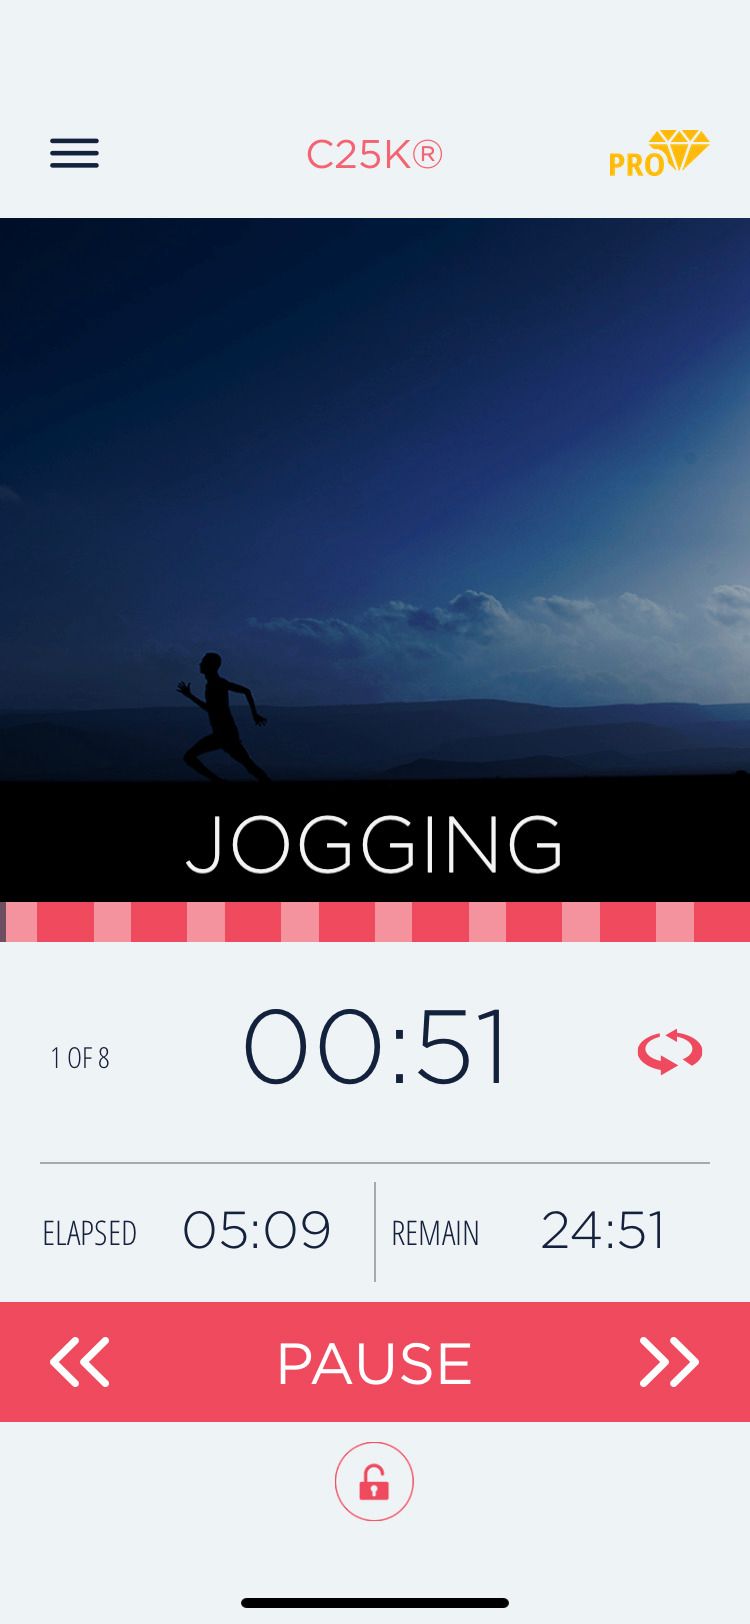 C25K app jogging screen